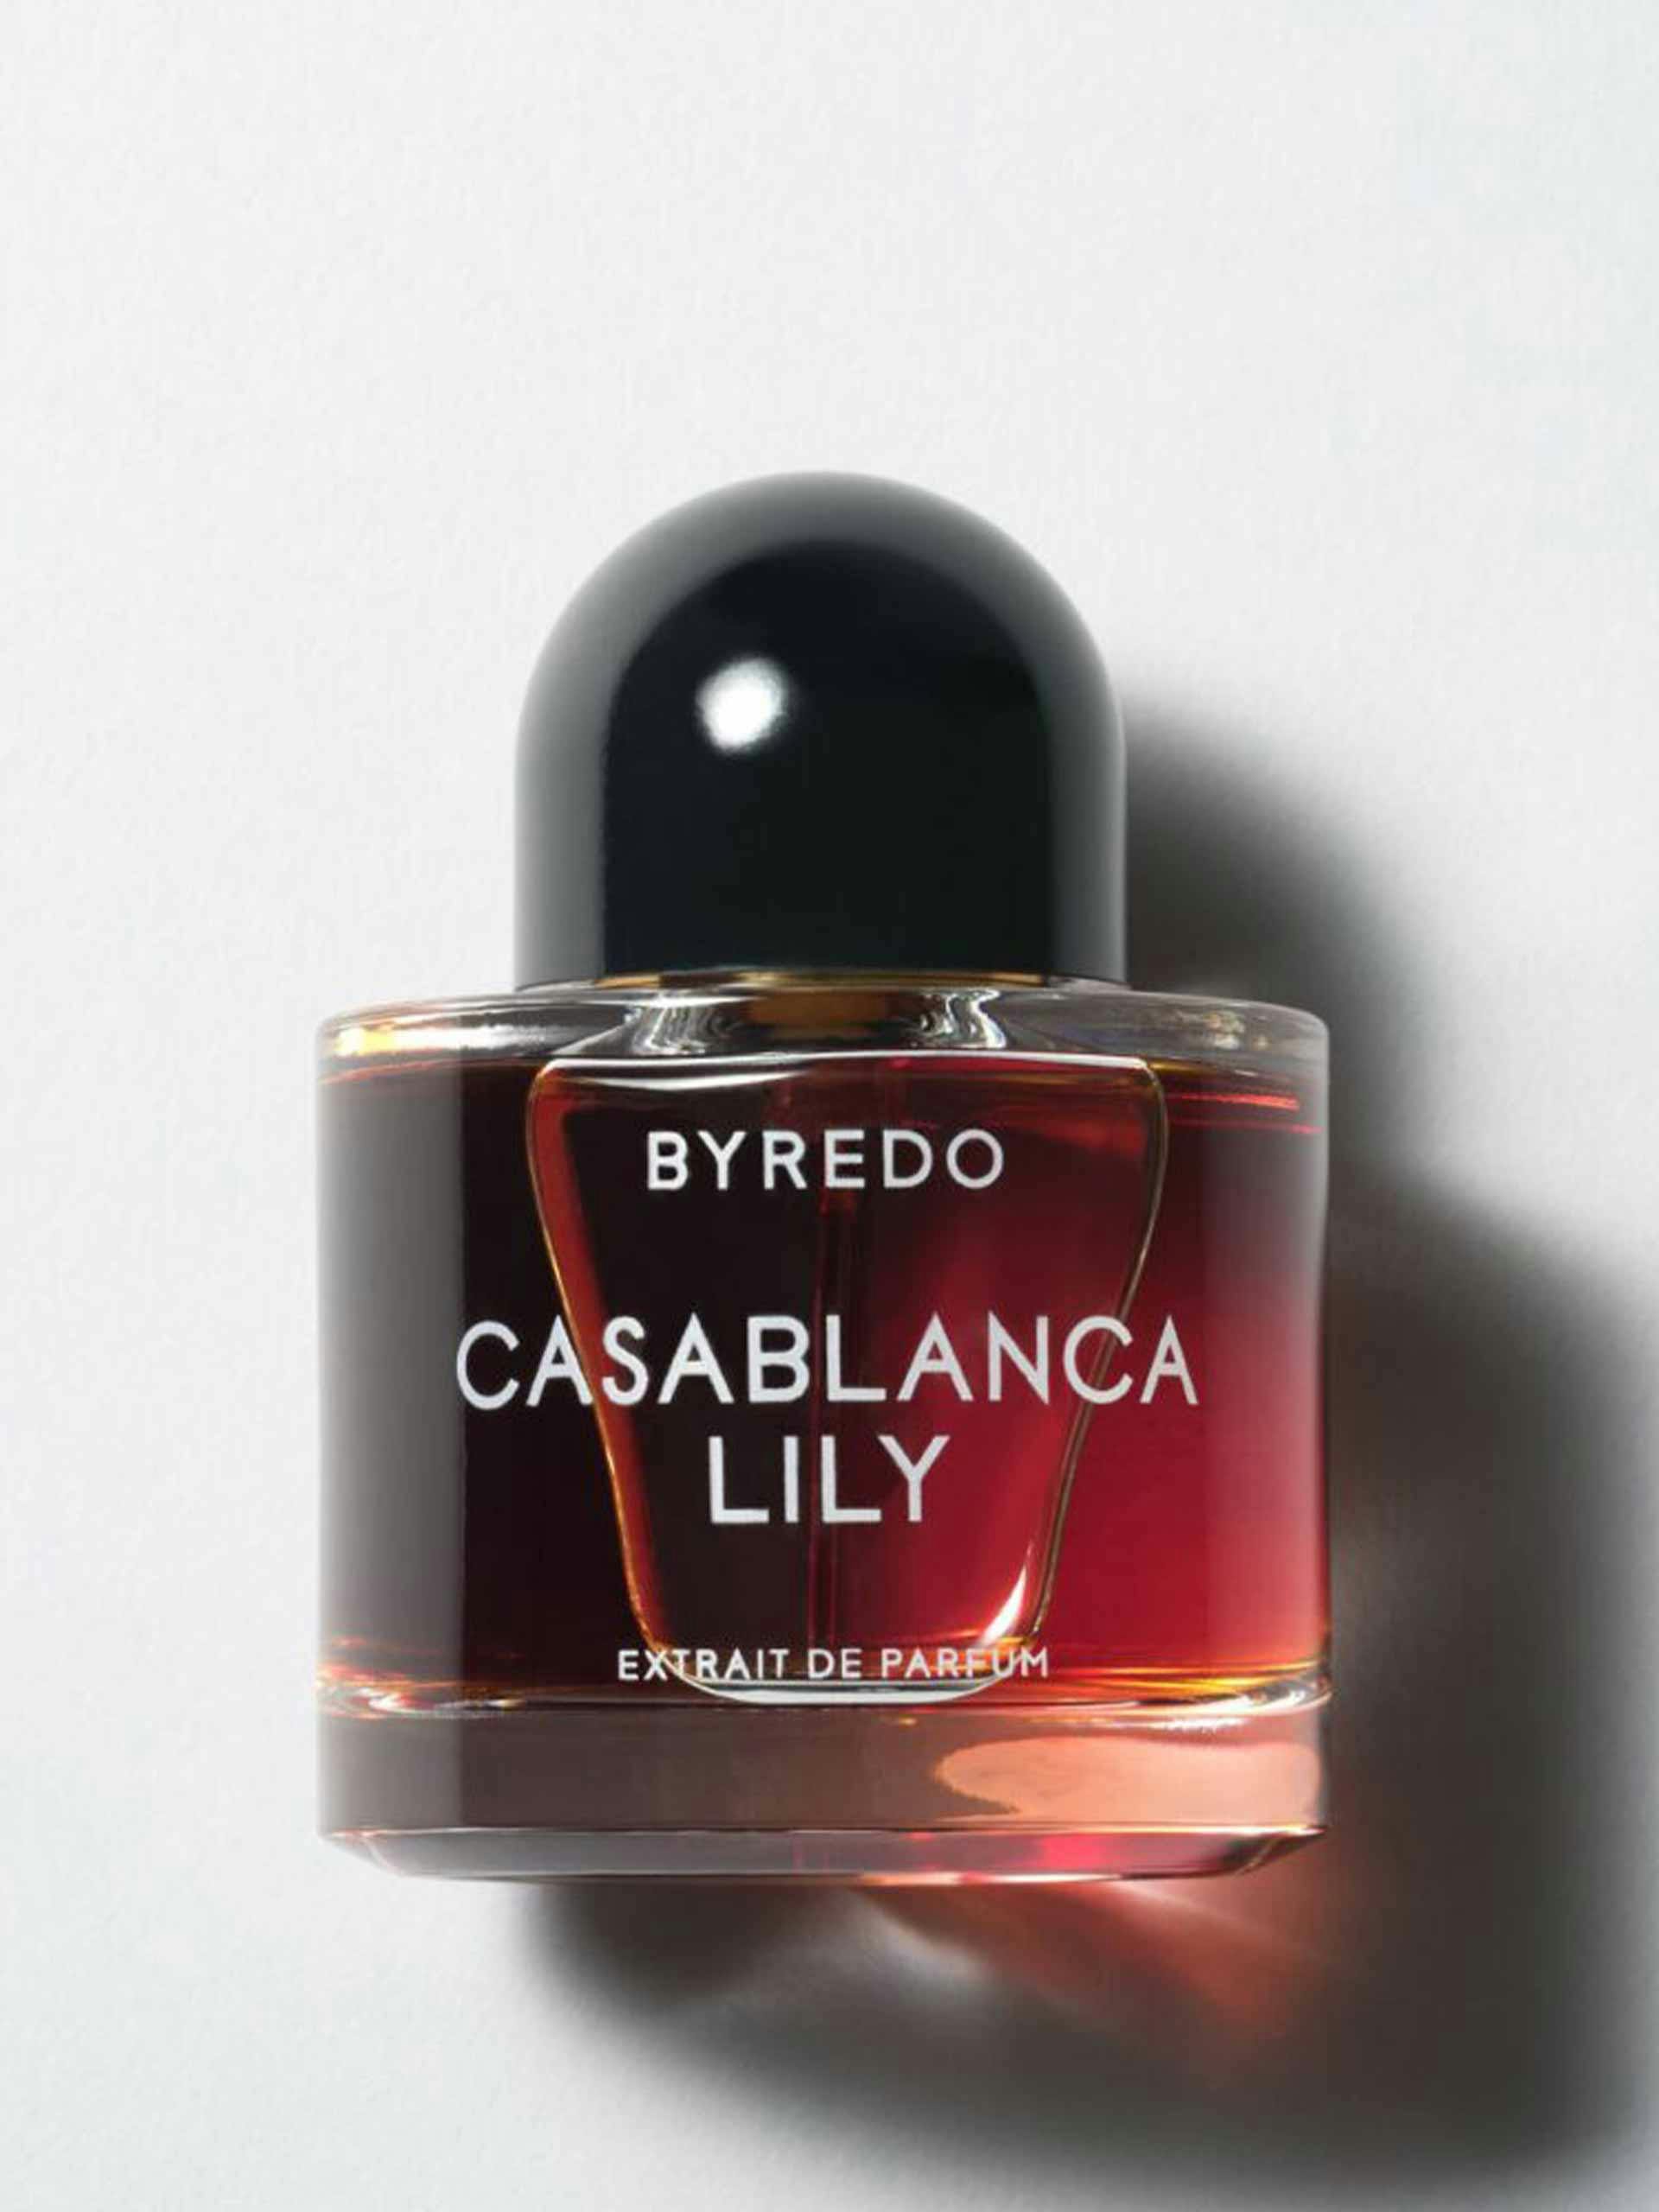 Casablanca Lily extrait de parfum